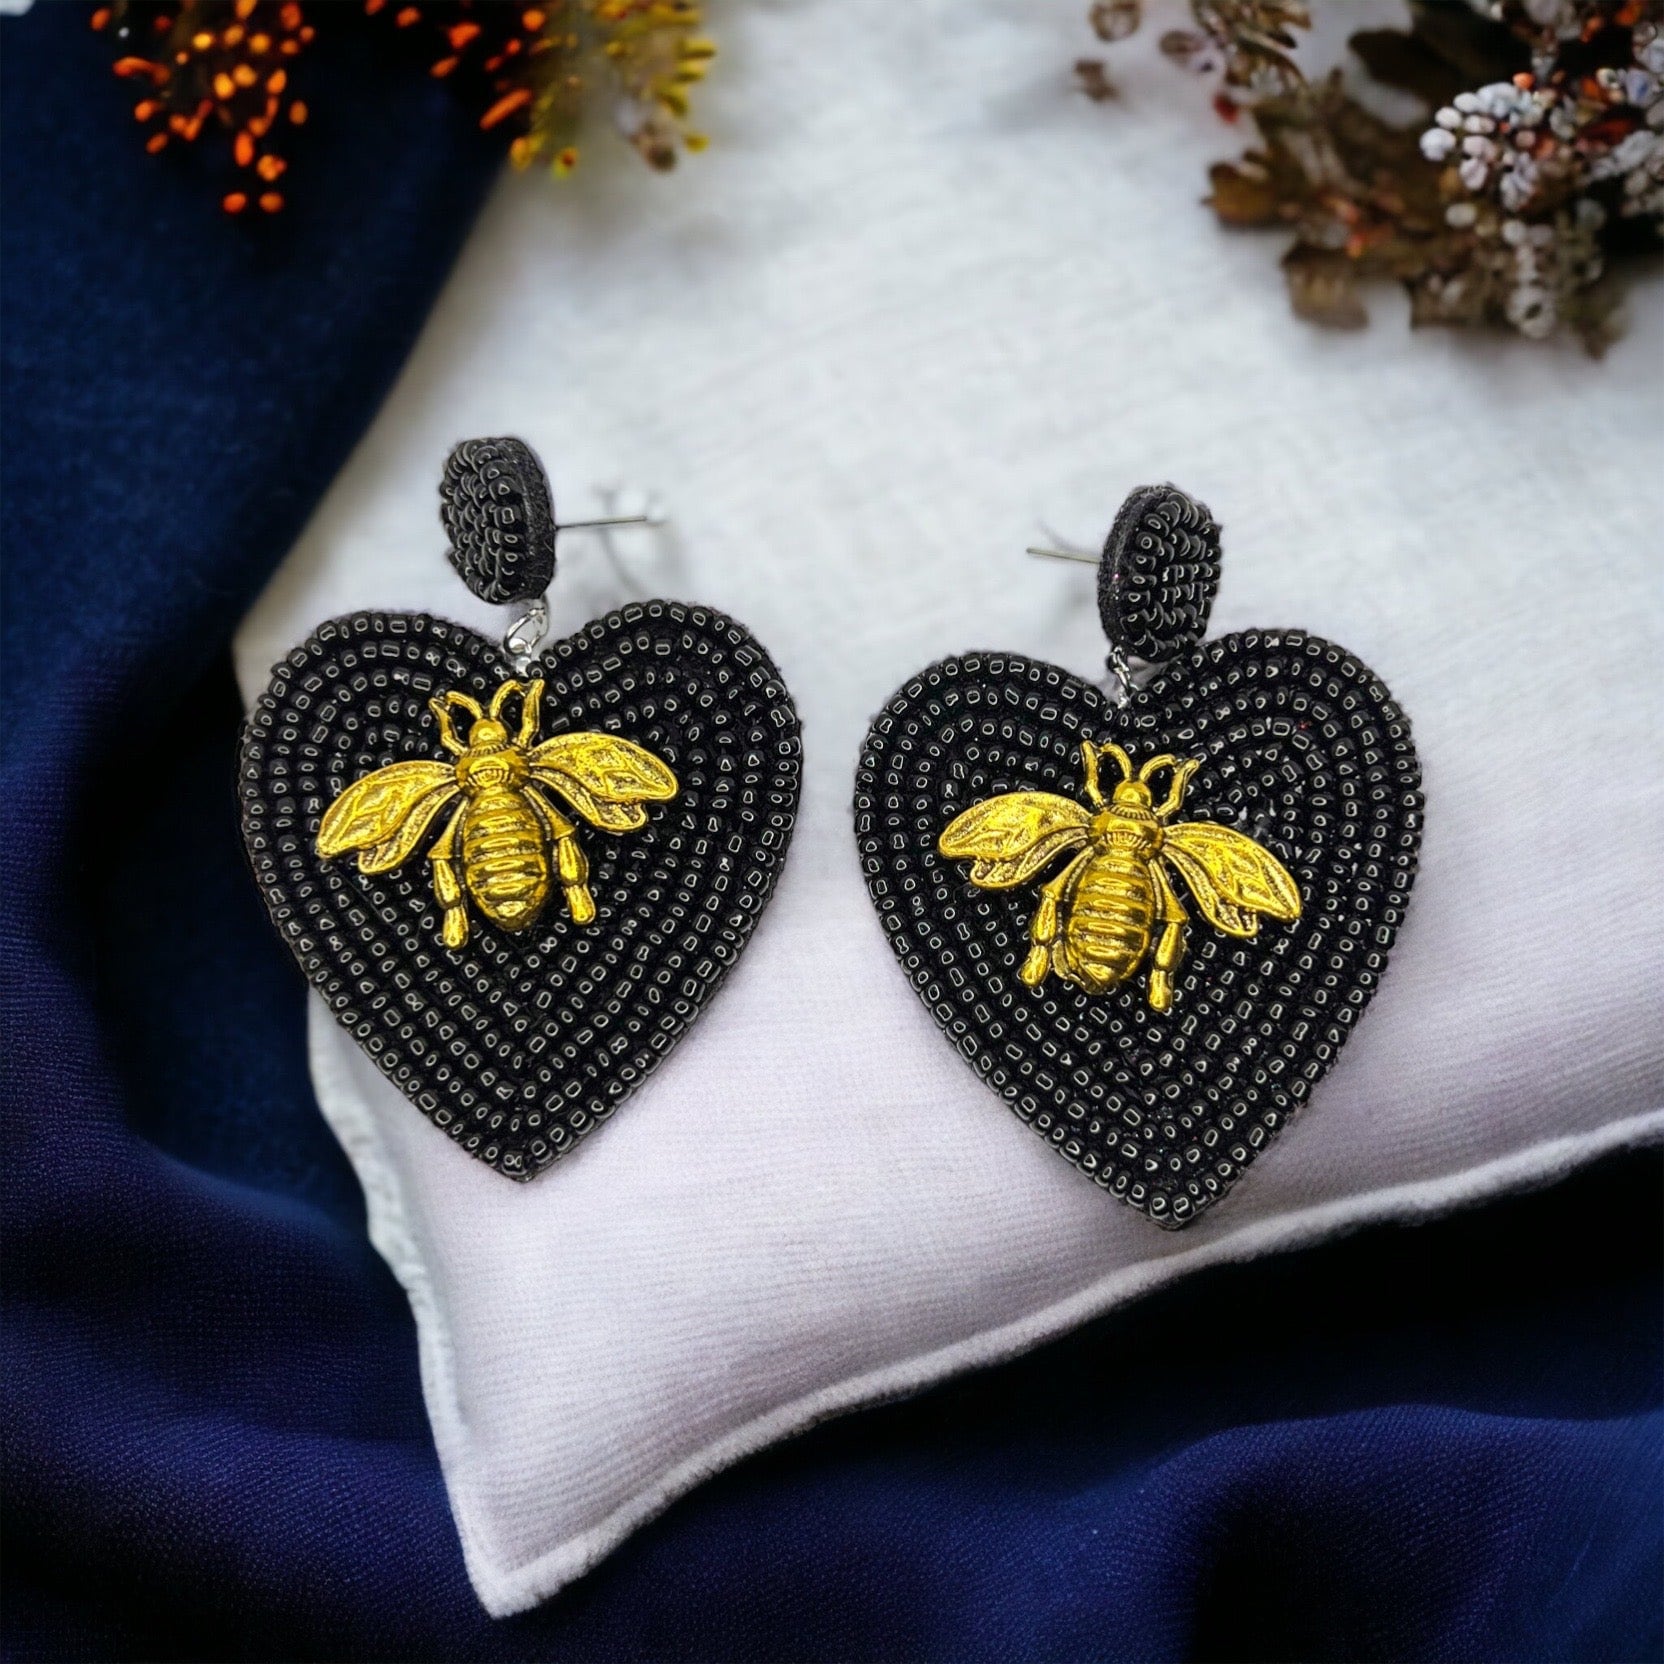 Rhinestone Bee Earrings - Honeybee Earrings, Bumblebee Earrings Black Earrings, Bee Mine, Black and Gold Earrings, Rhinestone Earrings, Bead